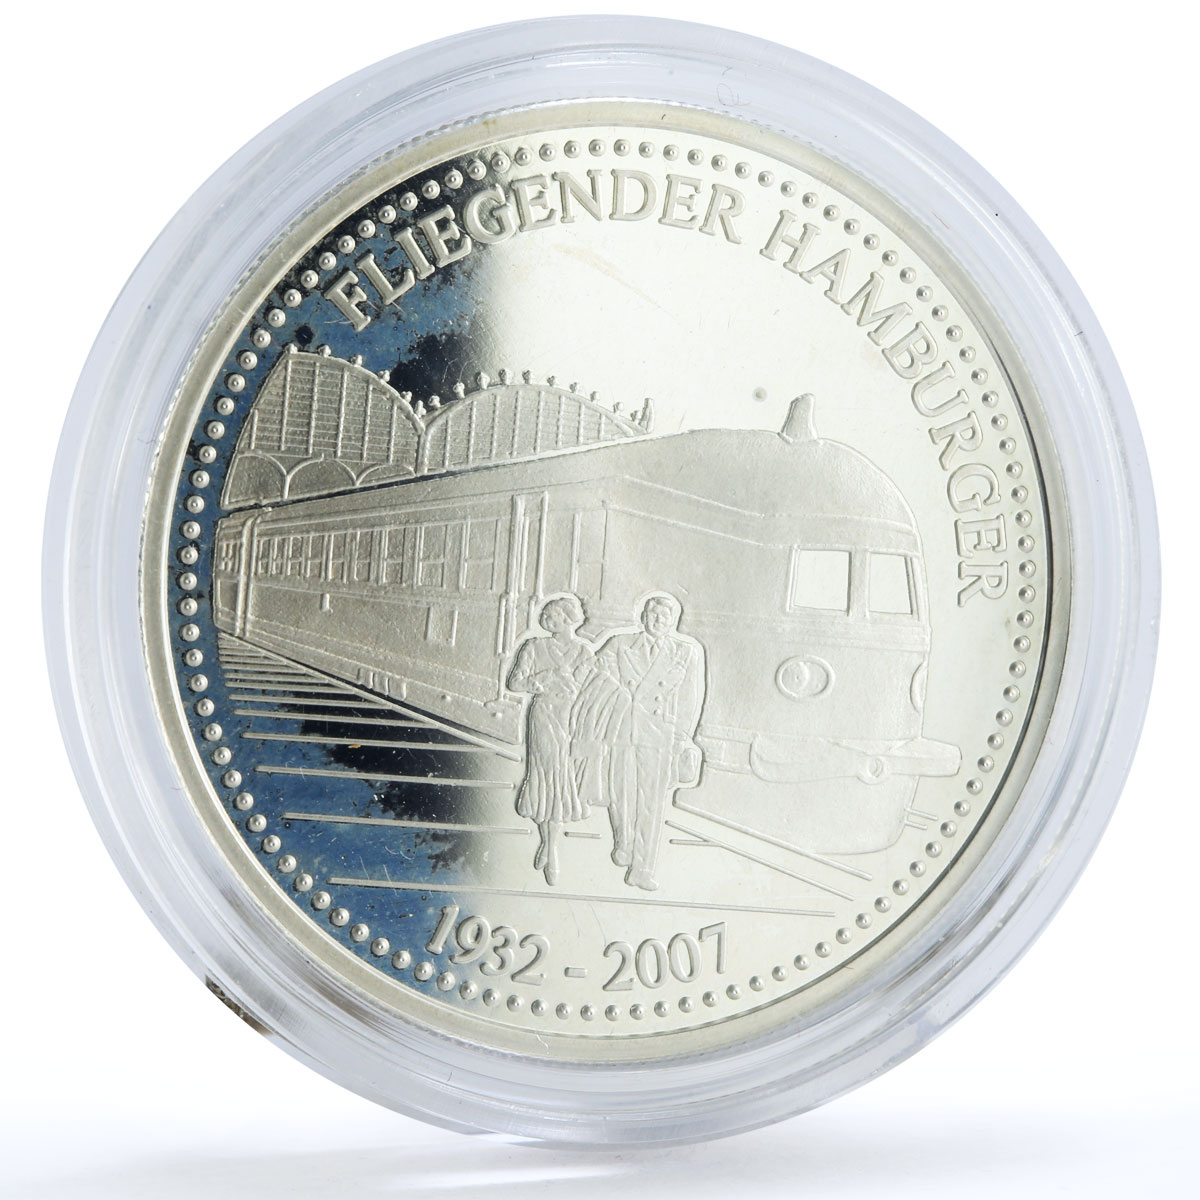 Togo 1000 francs Trains Railways Fliegende Hamburger Locomotive silver coin 2007